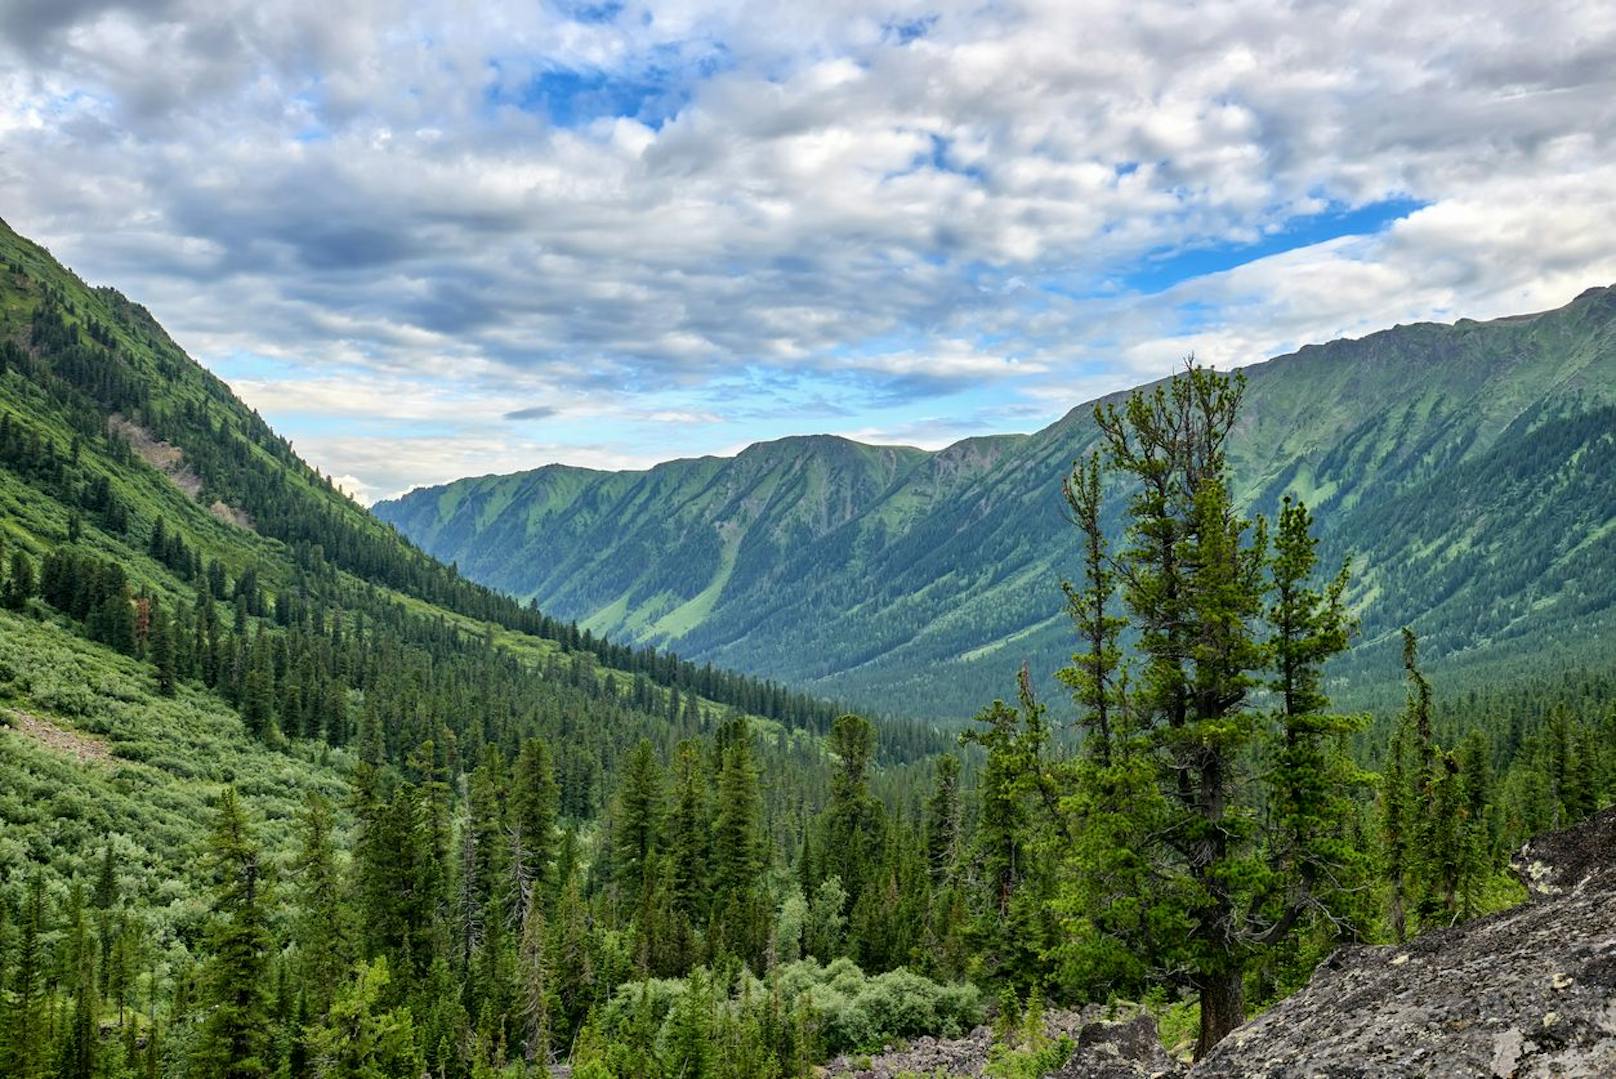 Russische Wälder könnten bei gezielter Aufforstung den Klimawandel abschwächen.